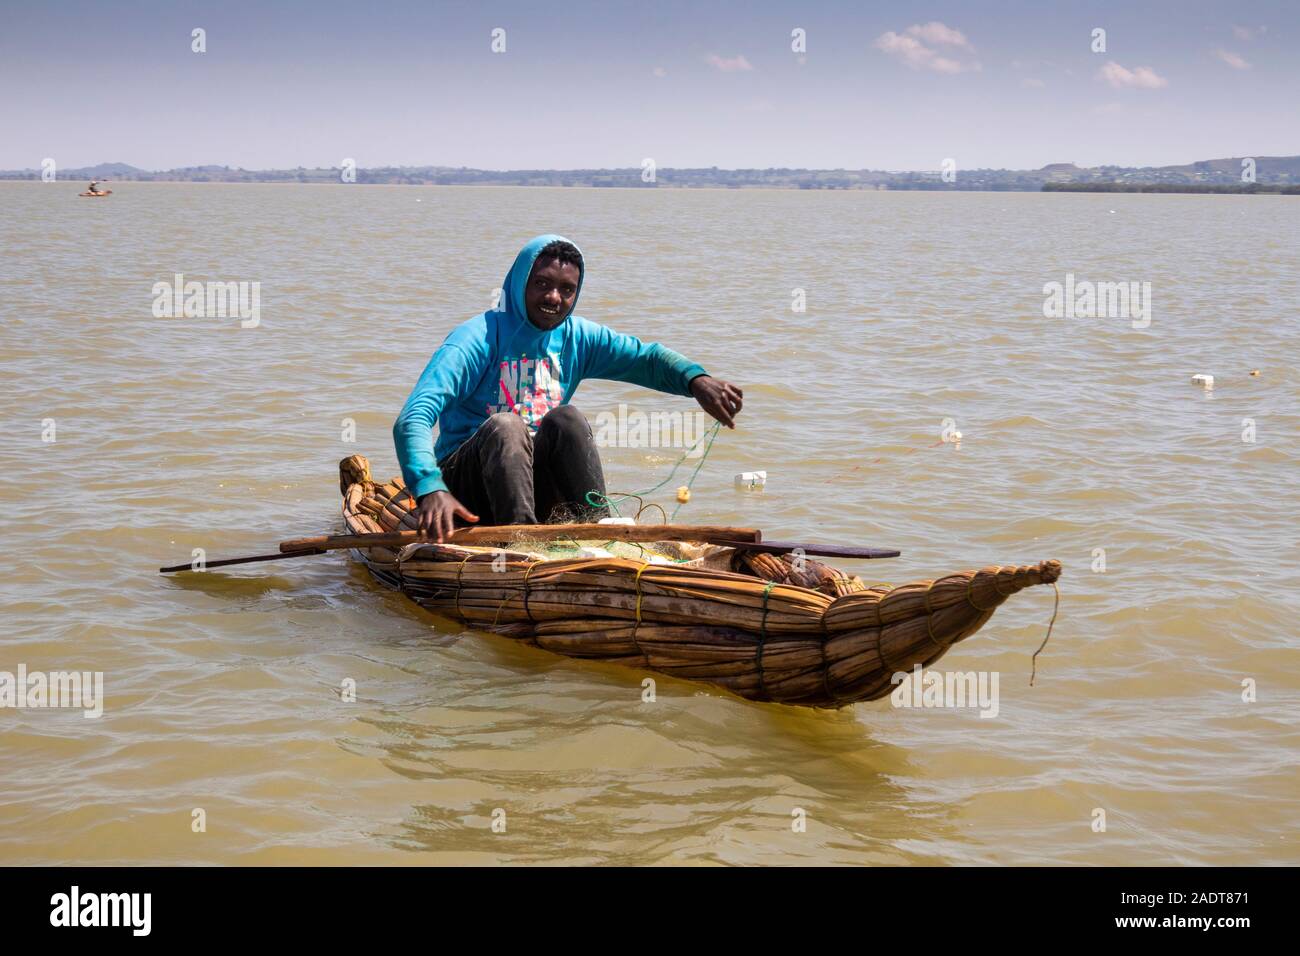 Ethiopia, Amhara Region, Bahir Dar, Lake Tana, fisherman in papyrus reed boat Stock Photo